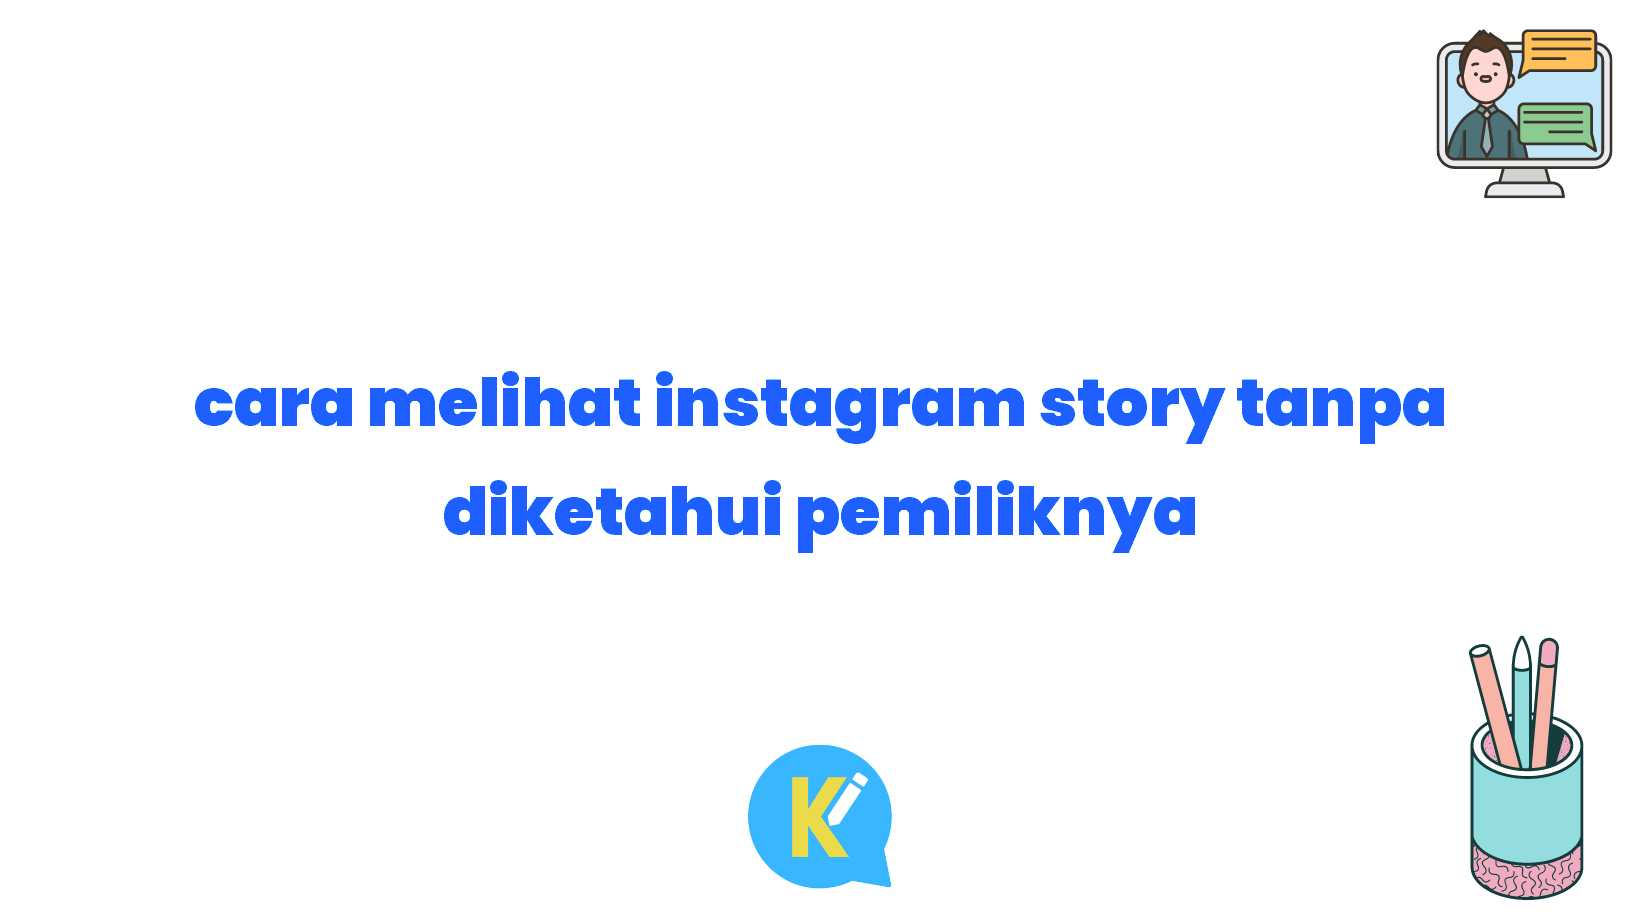 cara melihat instagram story tanpa diketahui pemiliknya